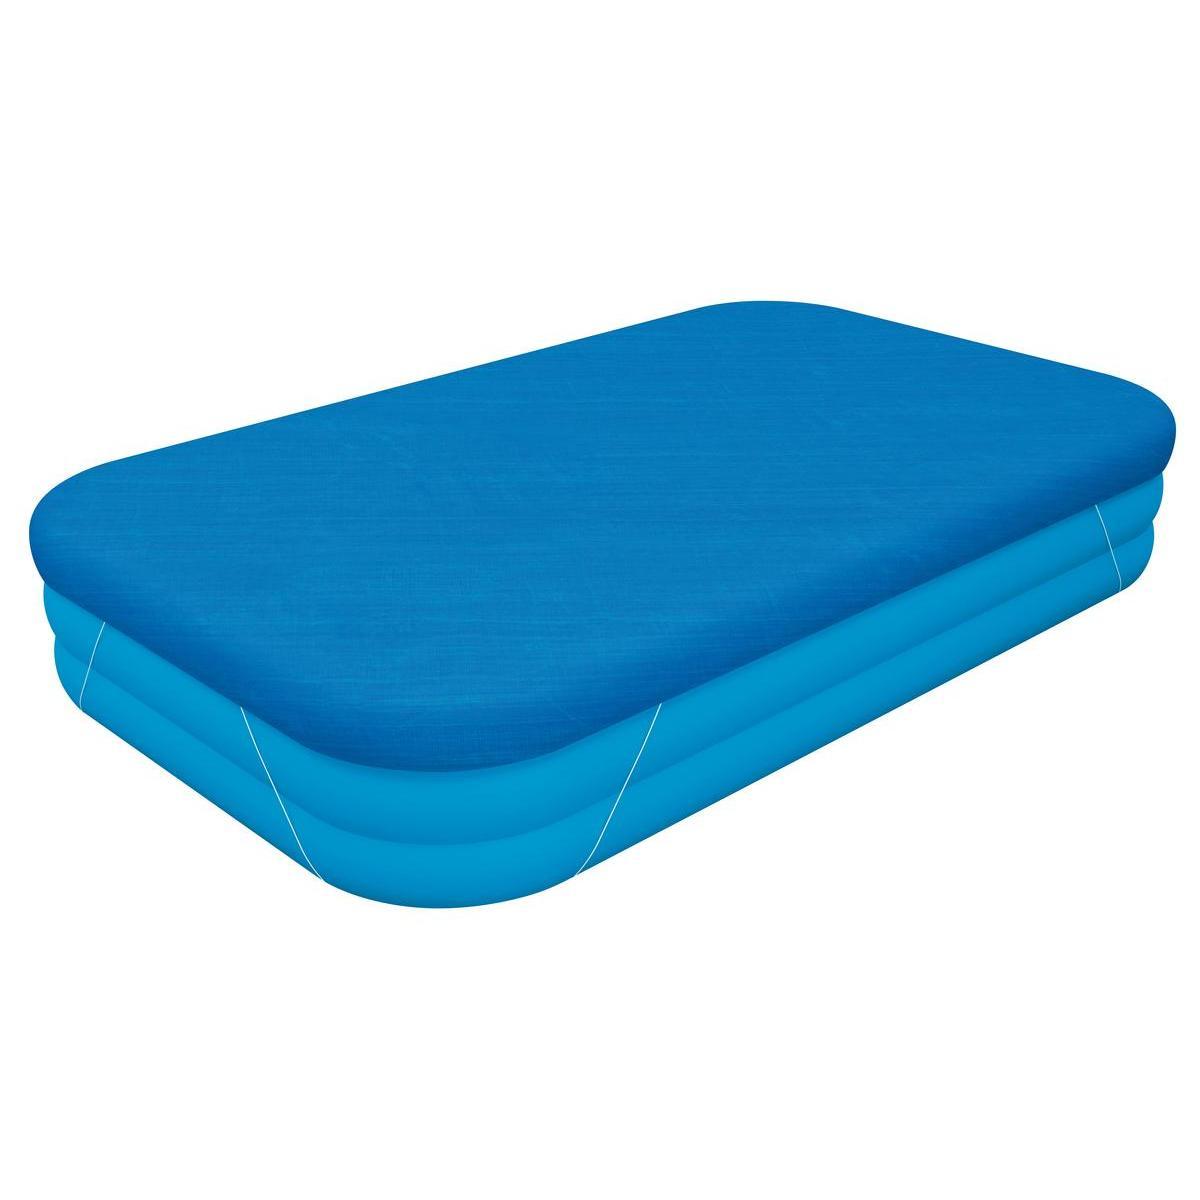 Bâche pour piscine gonflable rectangulaire - 305 x 183 cm - Bleu - BESTWAY